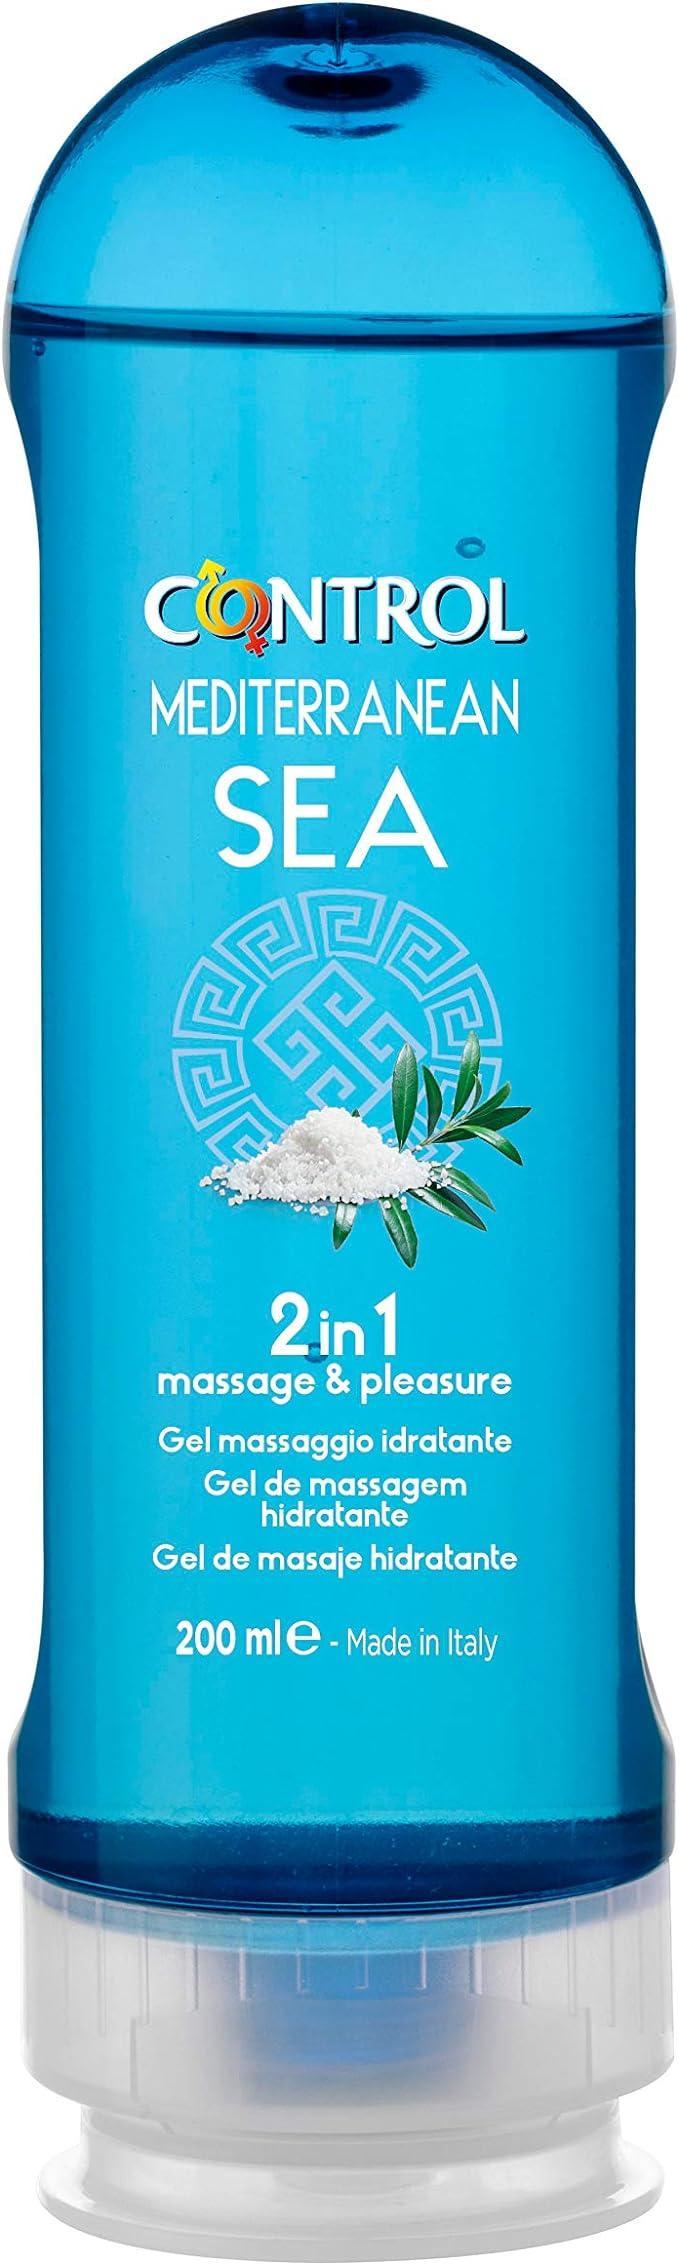 Gel massaggio e lubrificante Control 2 in 1 Mediterranean sea 200ml